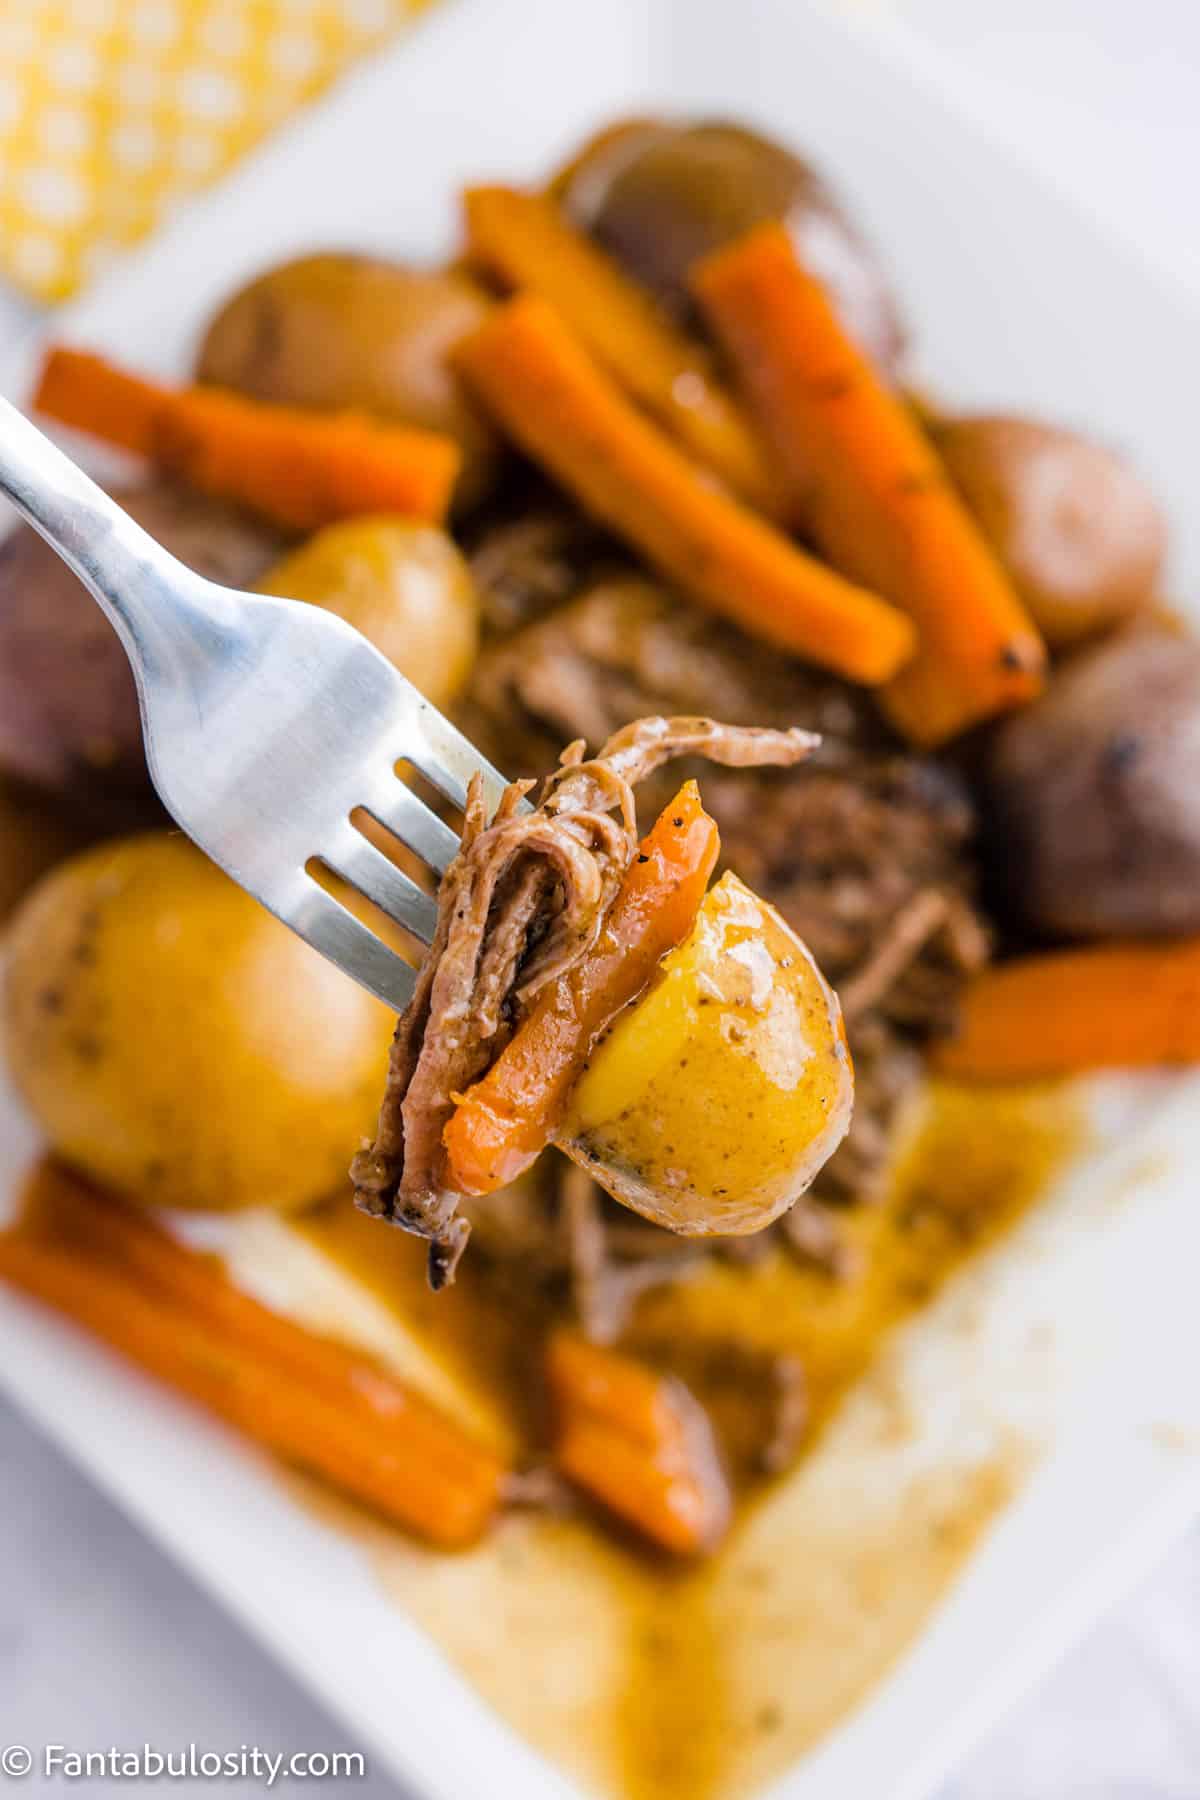 Tri tip roast with vegetables on fork